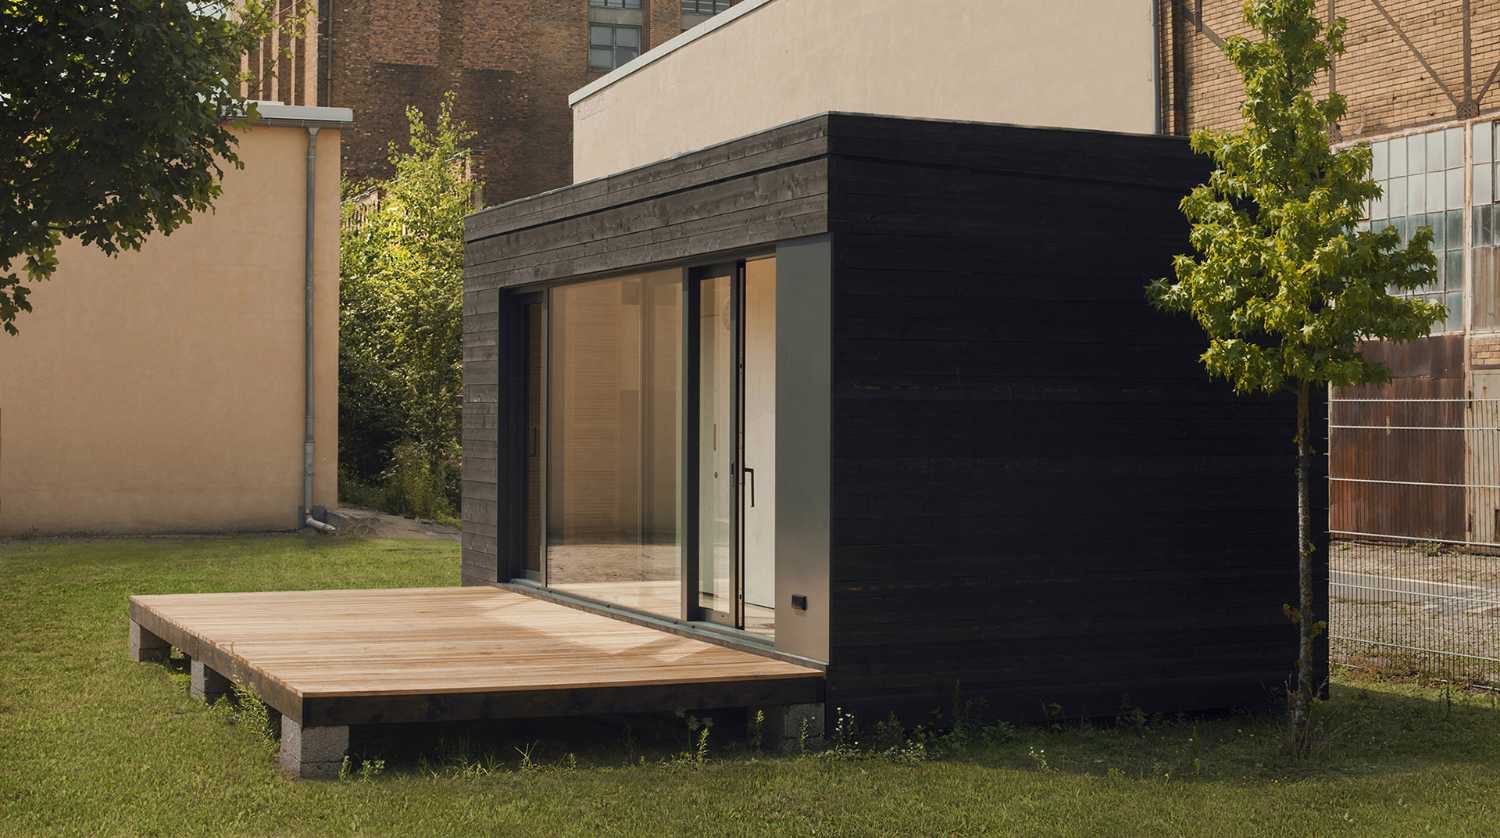 Minimalismo y confort en una vivienda modular. Arquitectura ecológica y sostenible